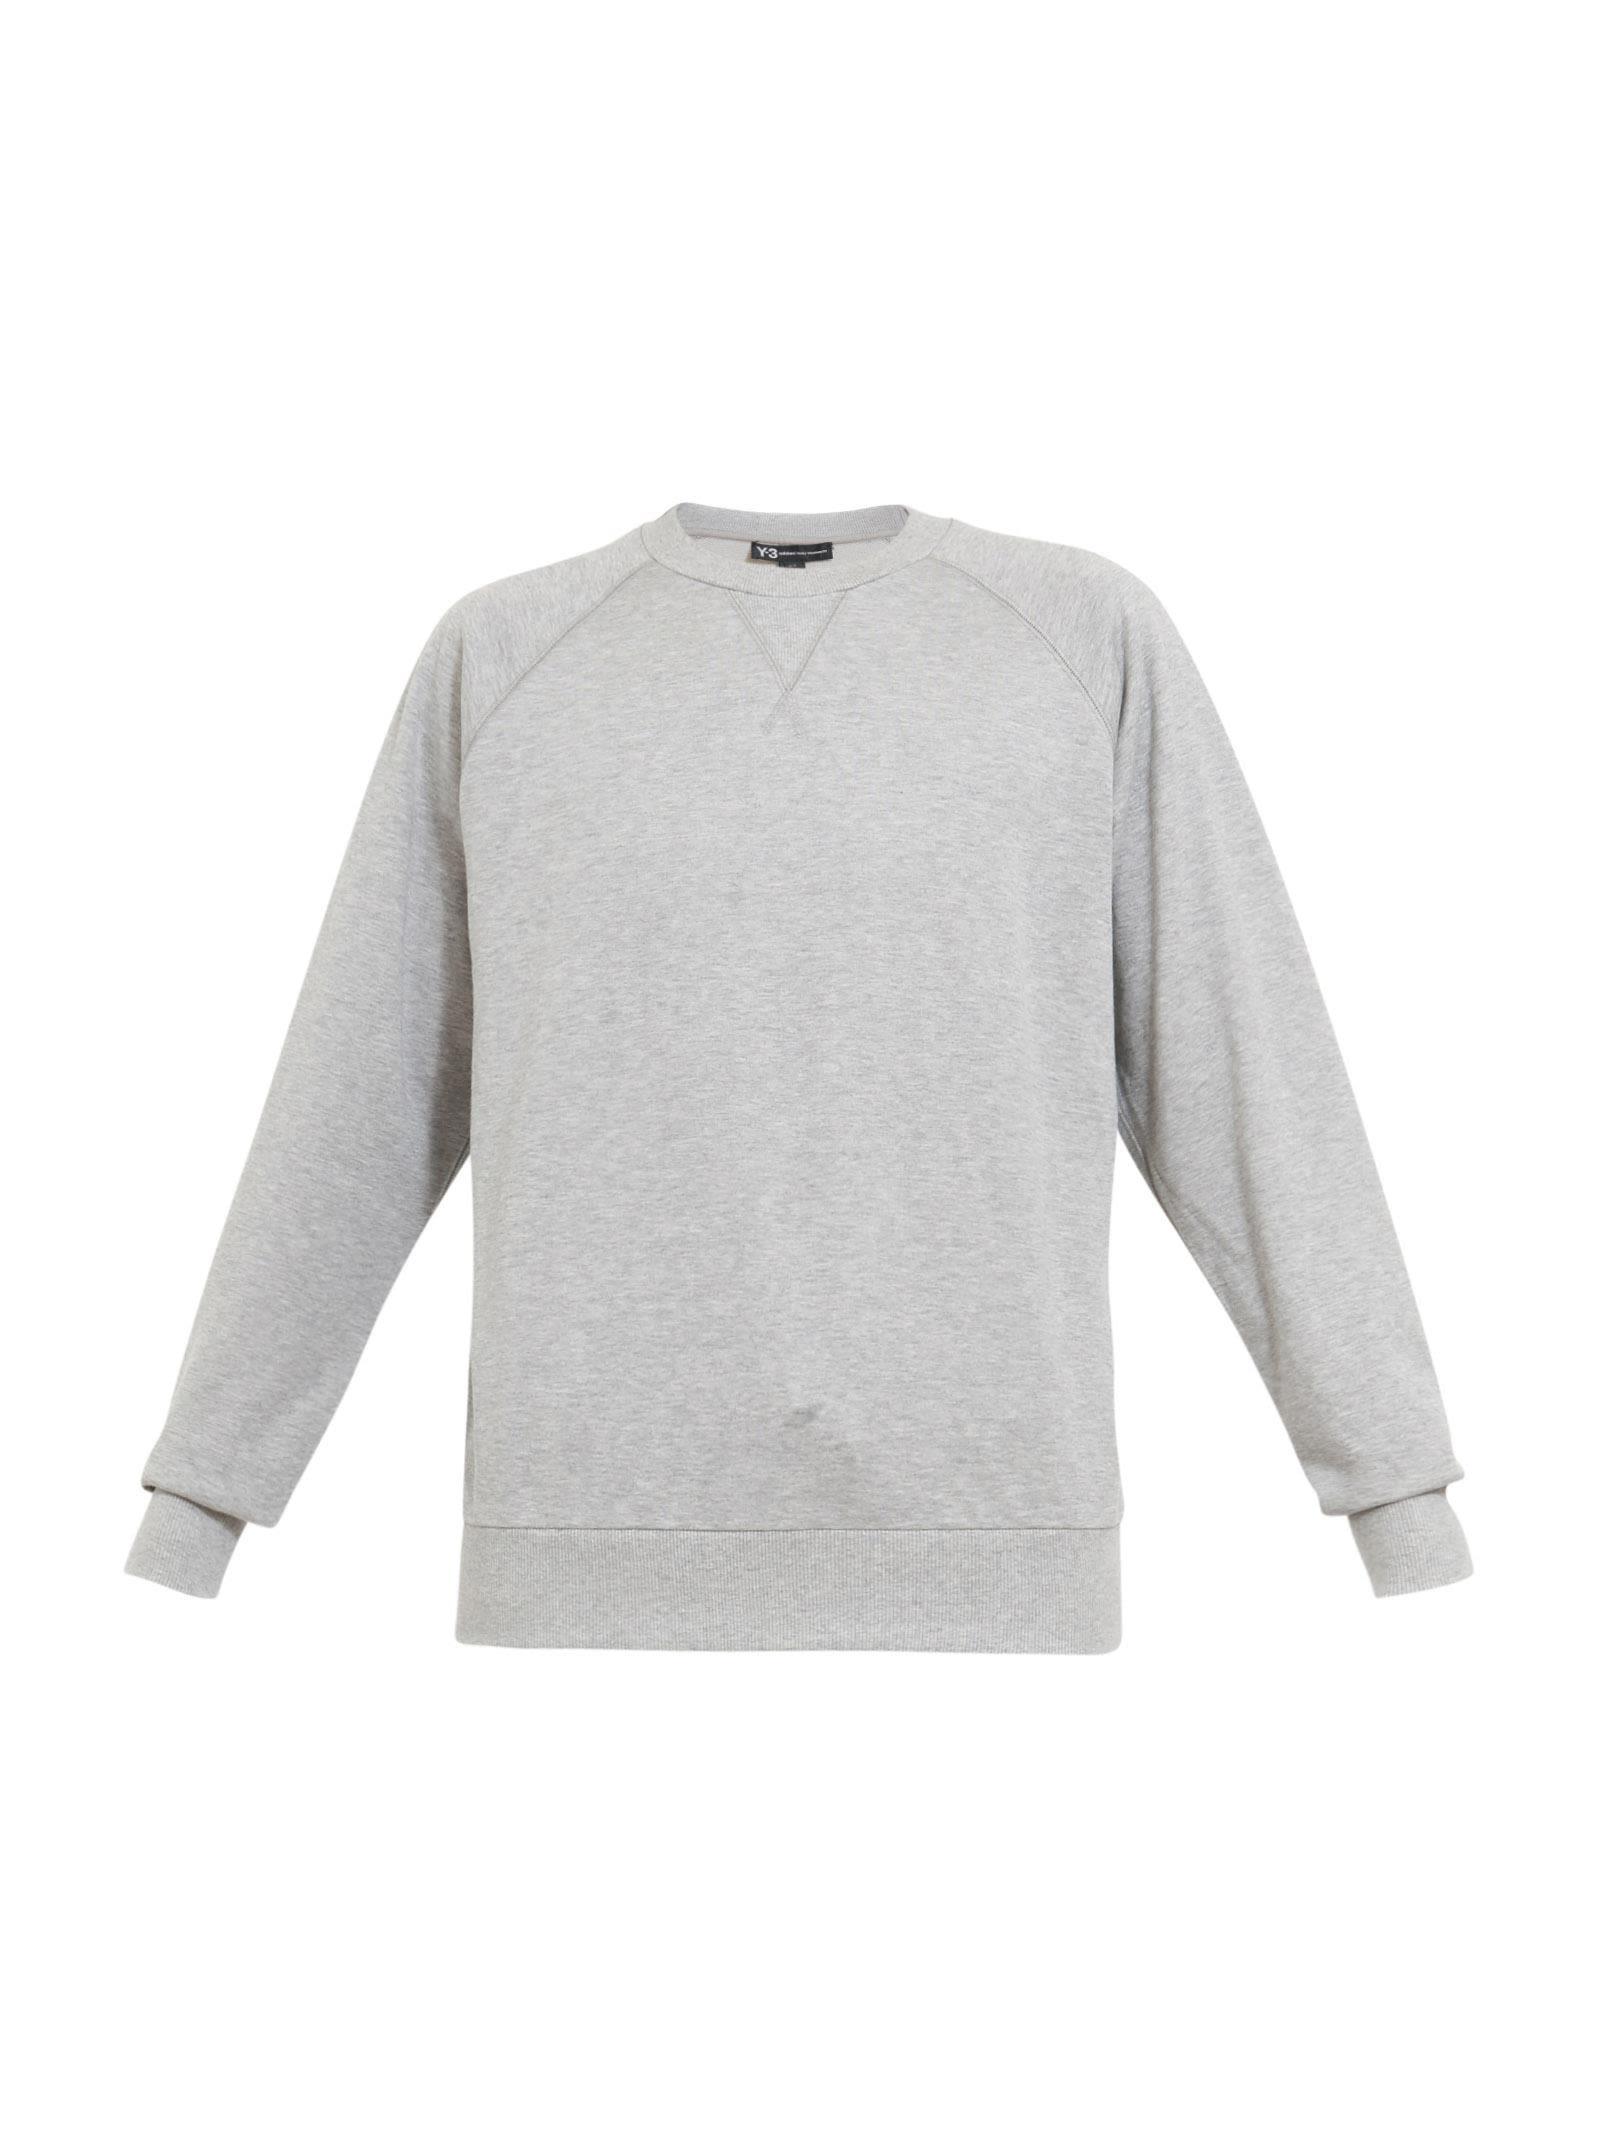 y3 grey sweatshirt